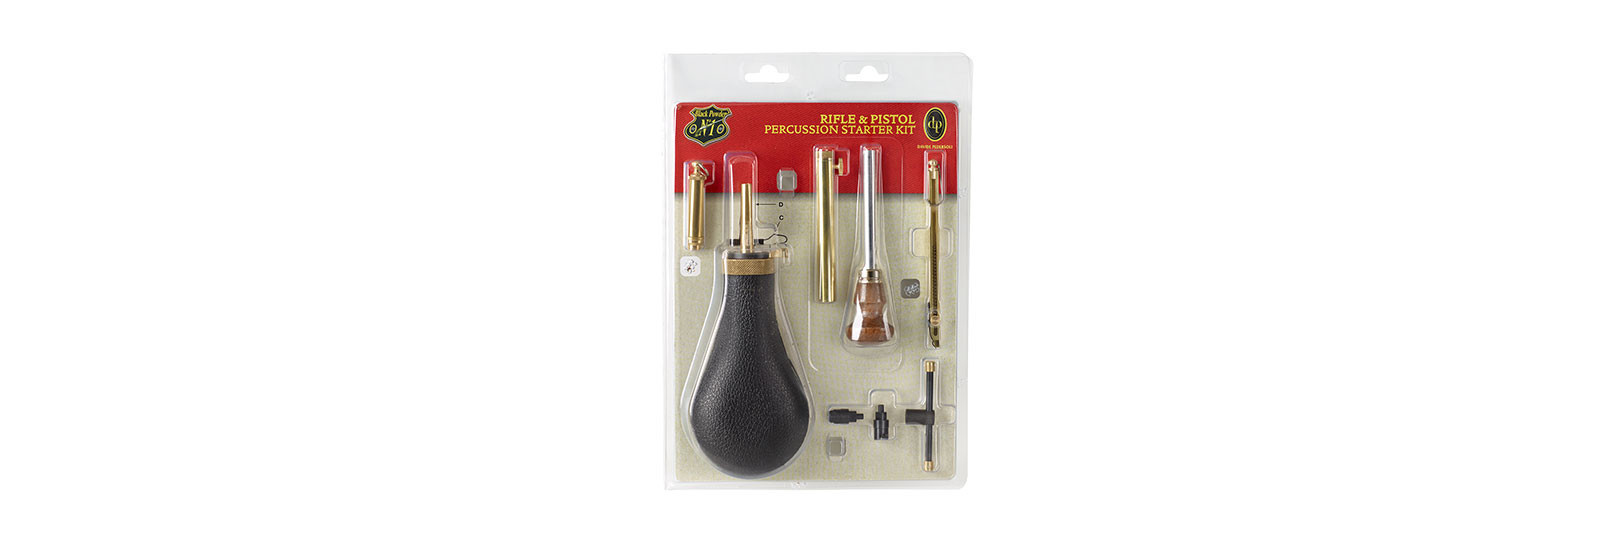 Rifle & pistol percussion starter kit black